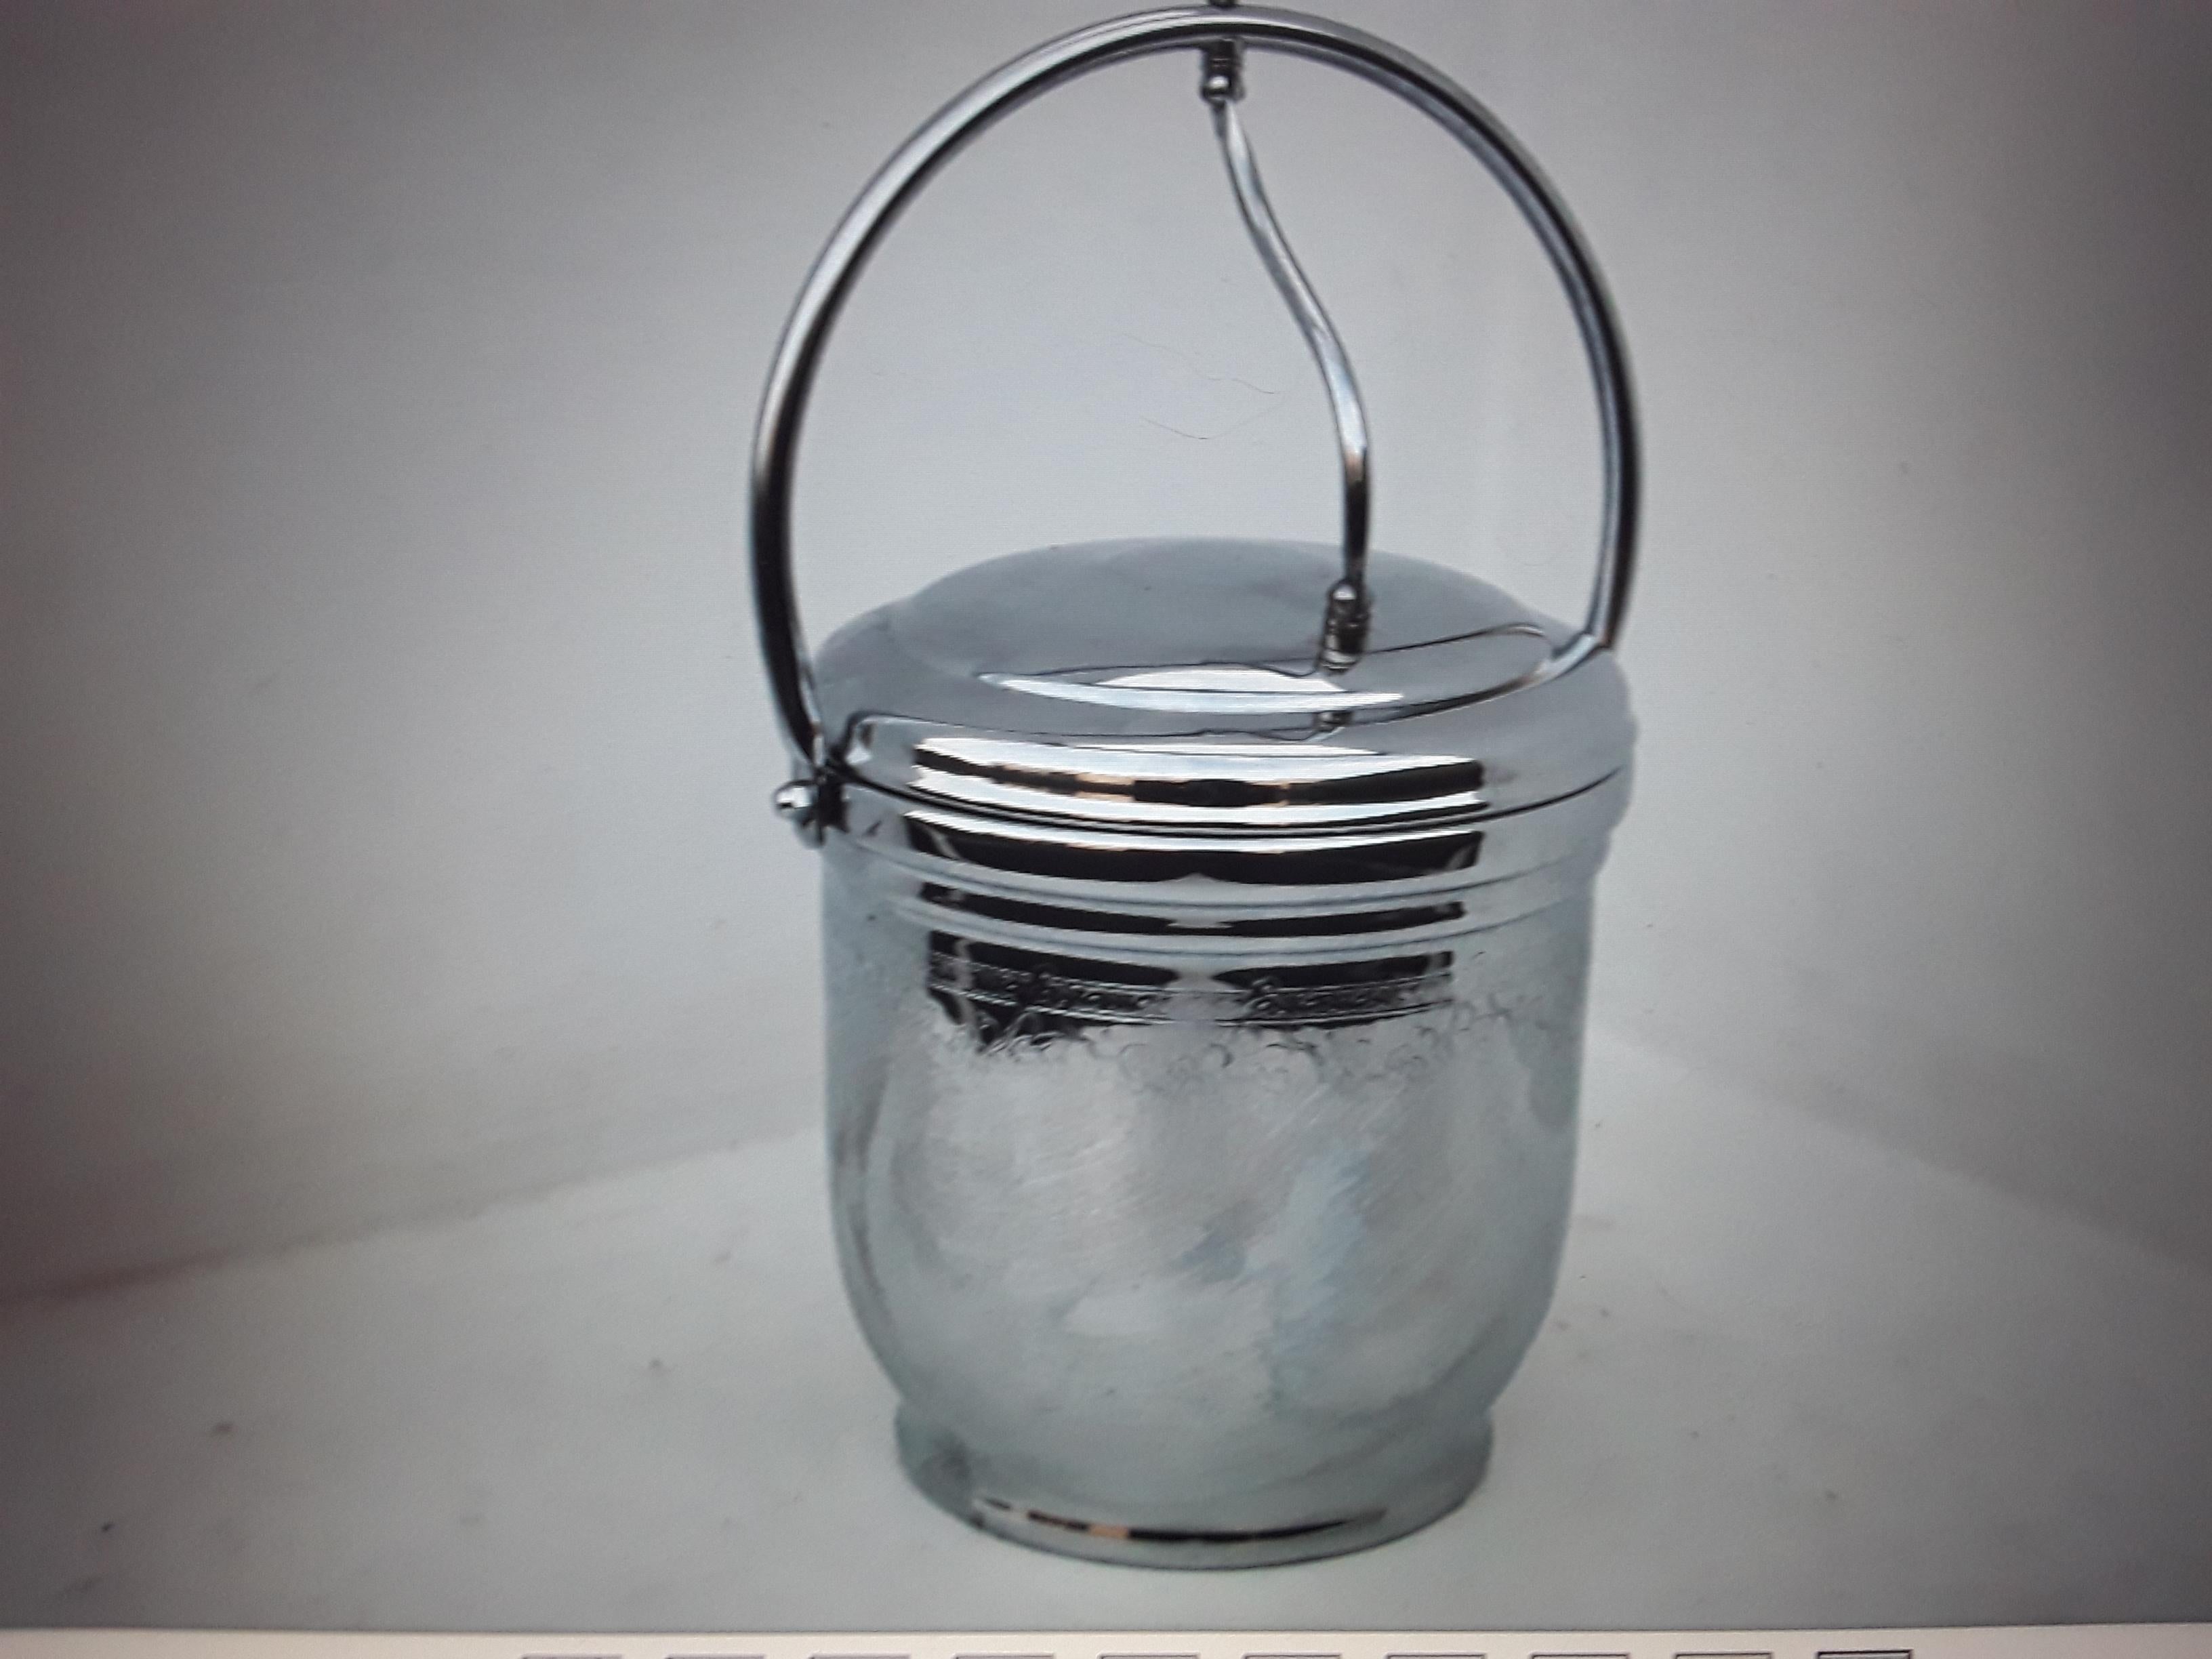 Seau à glace de la société United Solid Brass, datant des années 1970. Liner en verre. Seau chromé décoré.